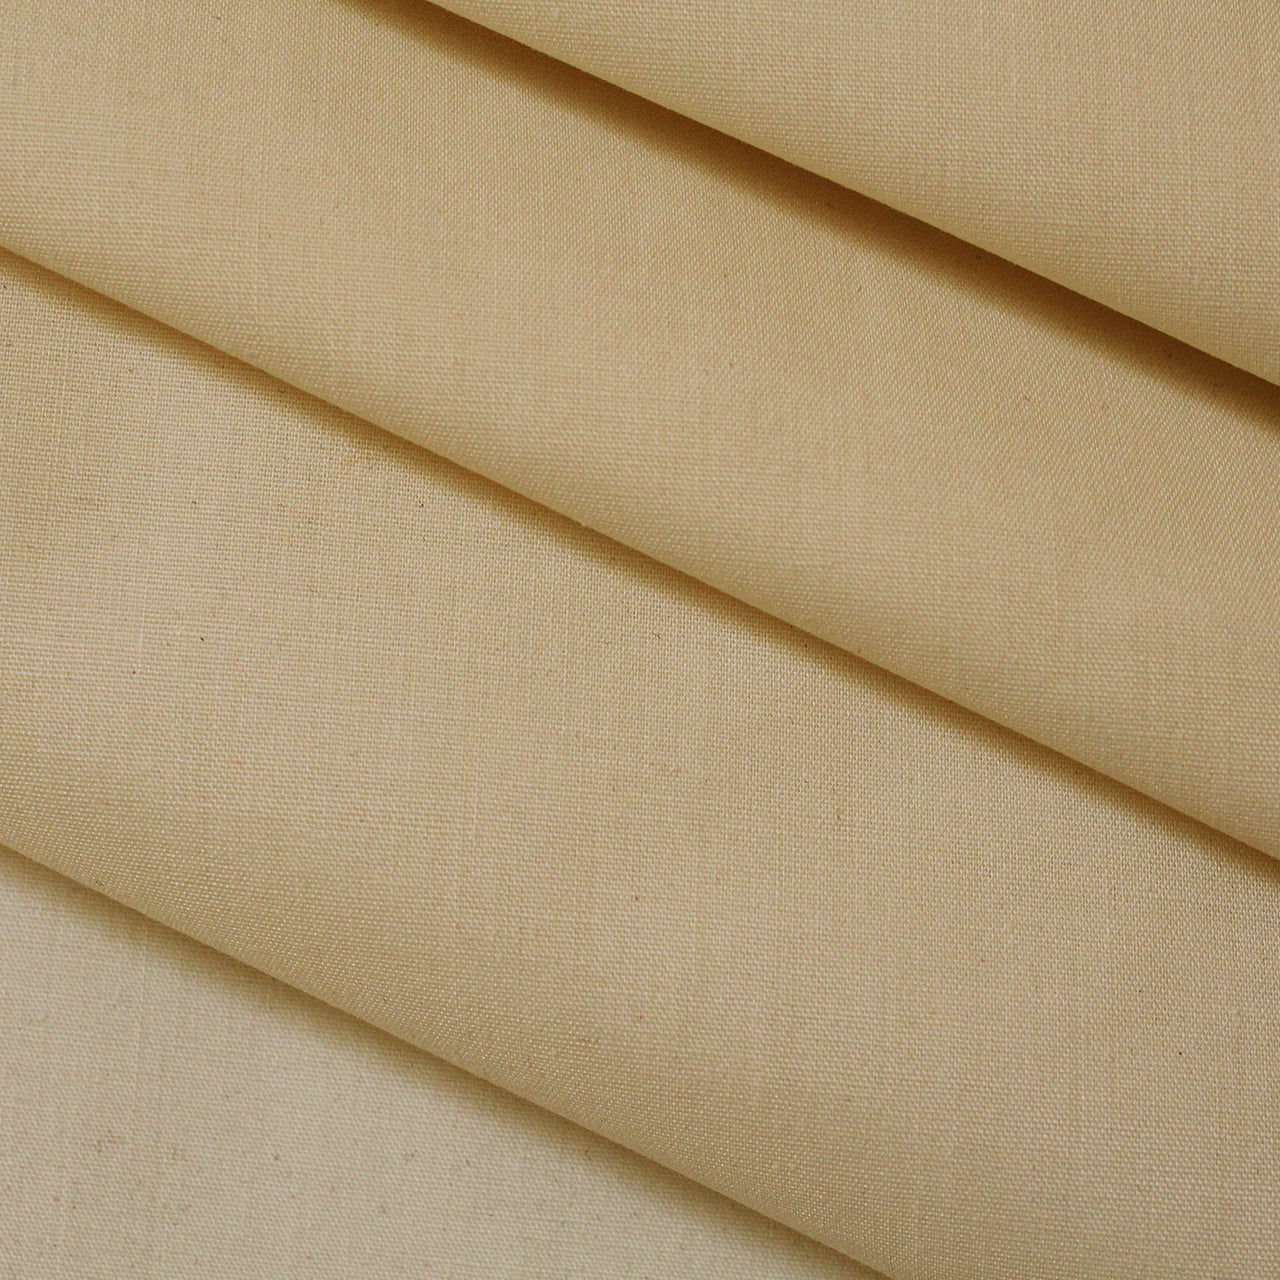 Cream - Superior Quality Plain Poly Cotton - Width 114cm